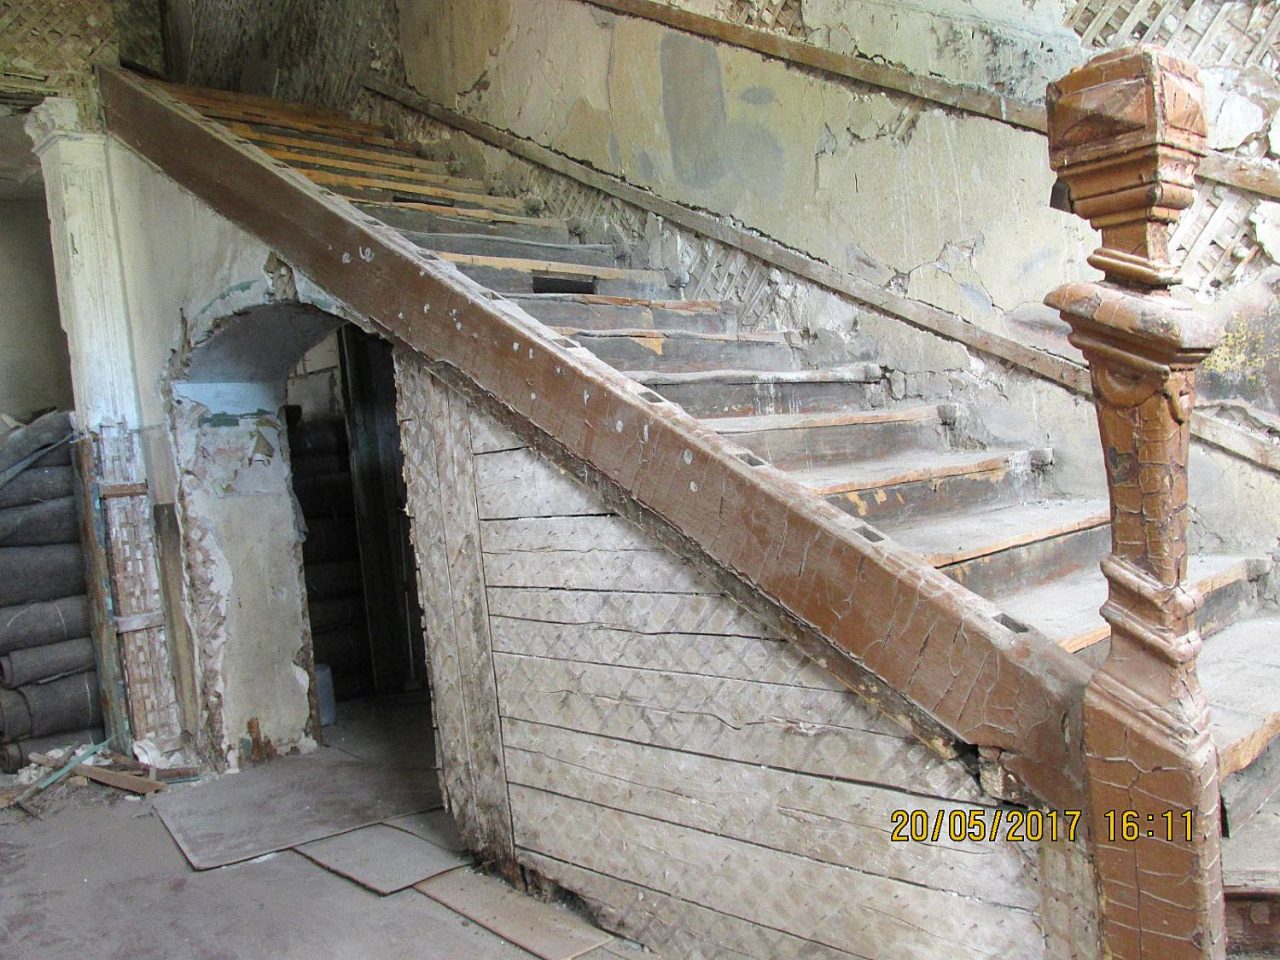 Процесс реставрации дома Осипова на разных этапах. Холл и парадная лестница дома